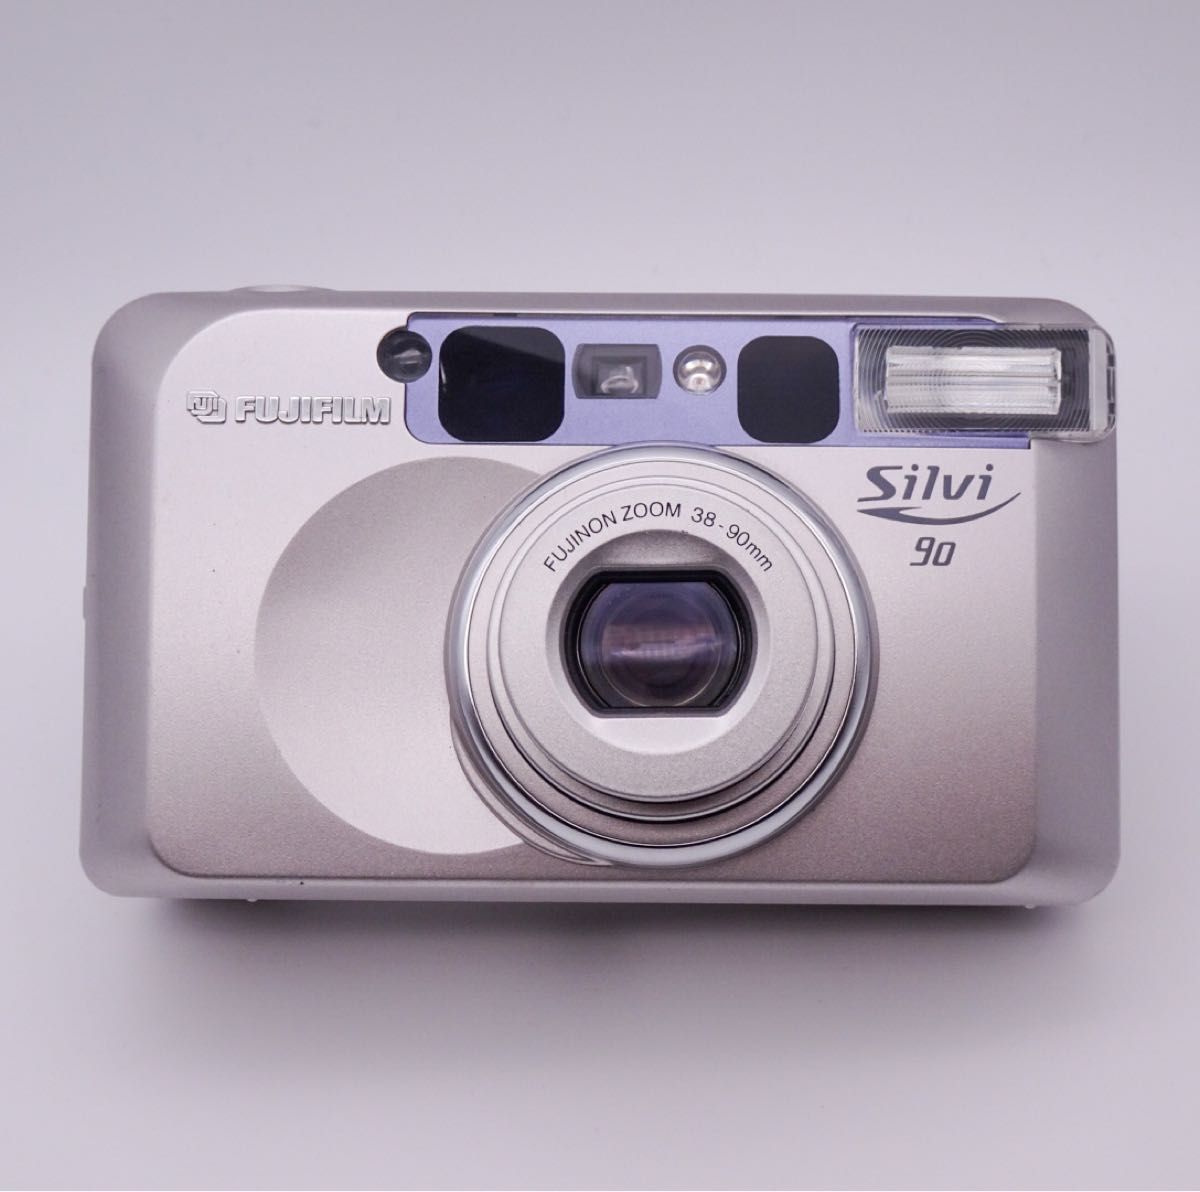 【完動美品】 FUJIFILM Silvi 90 コンパクトフィルムカメラ